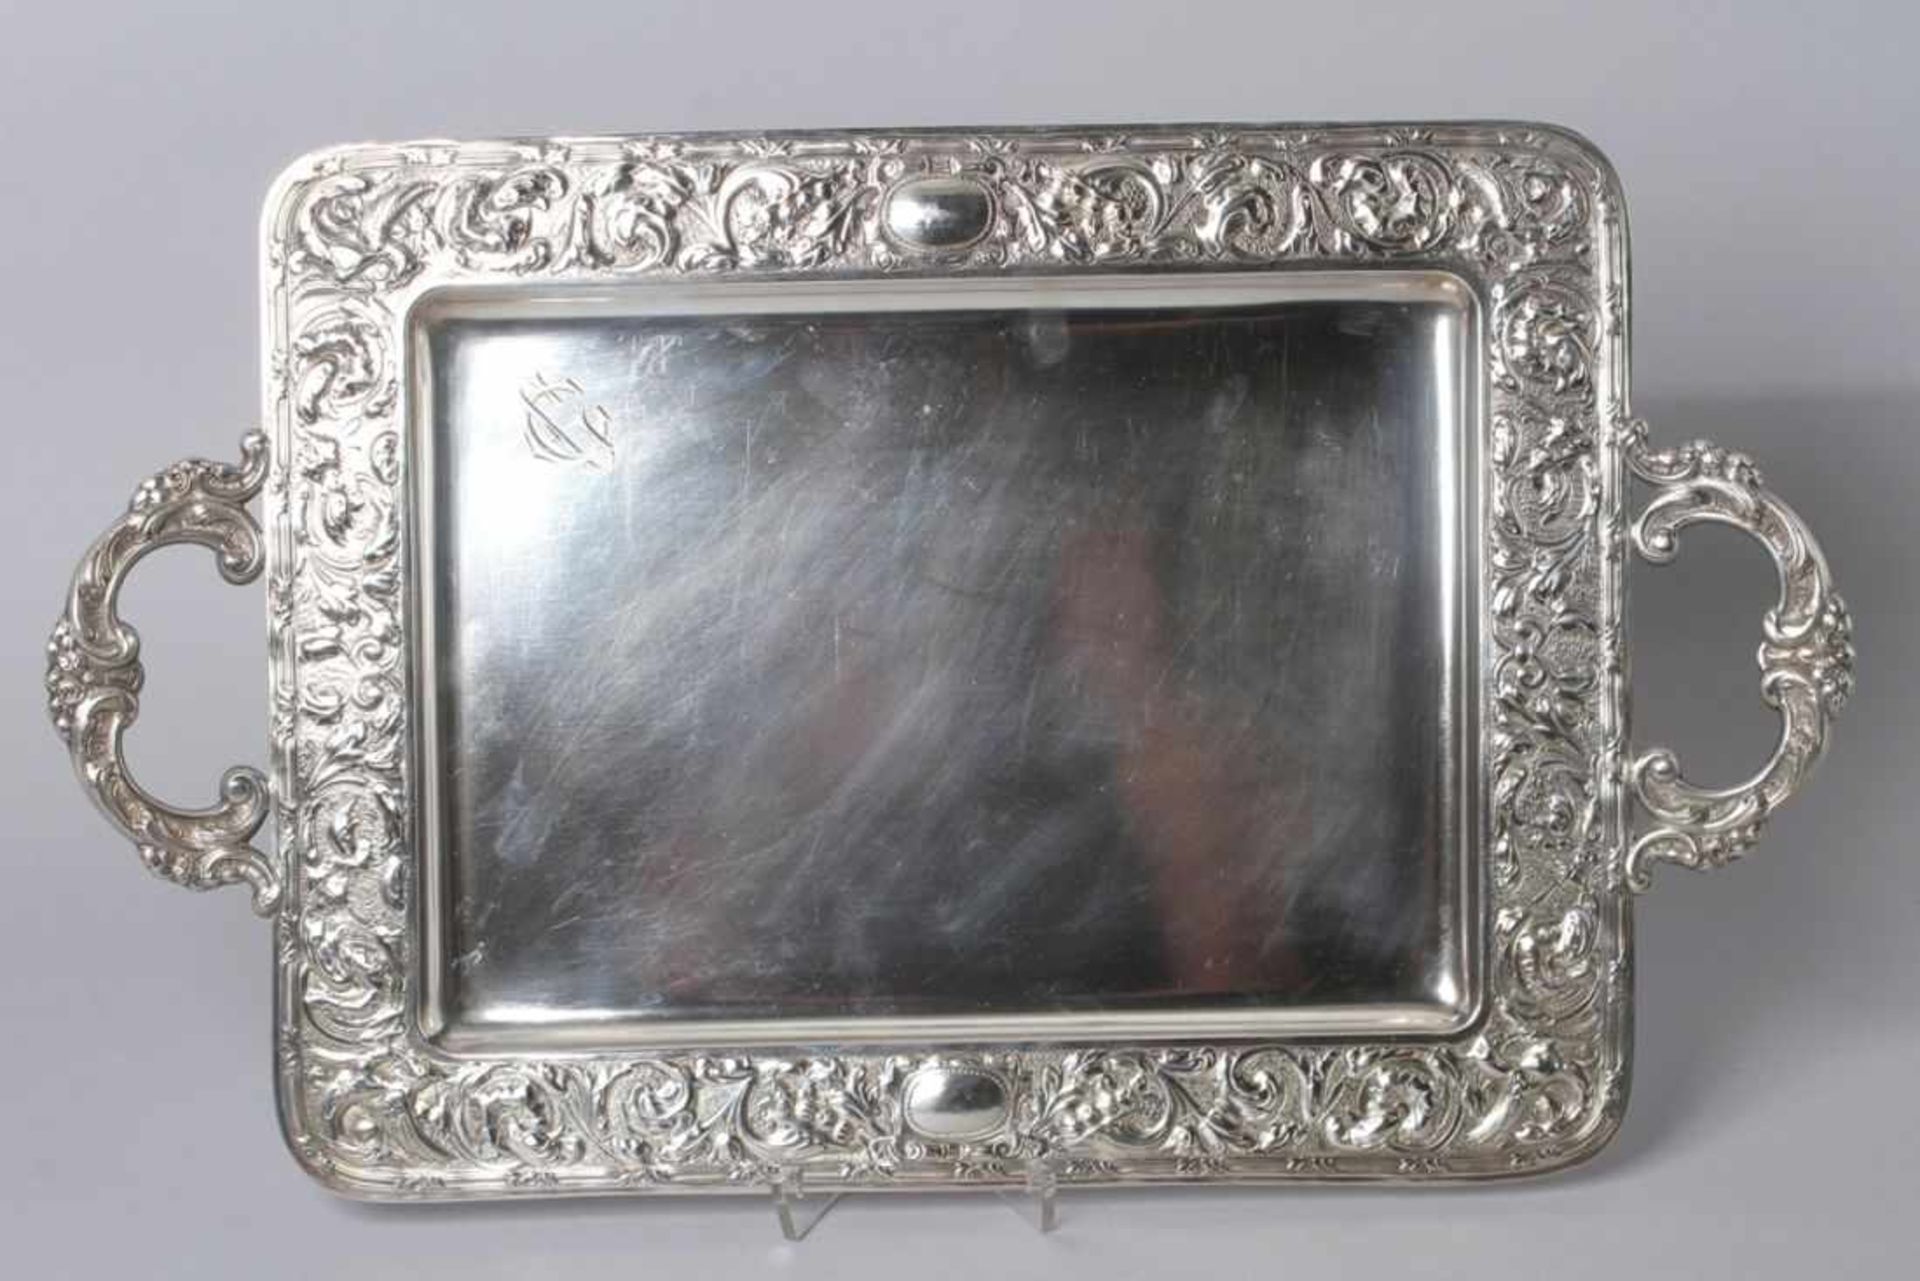 Tablett, M. Cano, Spanien, 1. Hälfte 20. Jh., Silber 916, rechteckig, seitlich 2Tragegriffe, glatter